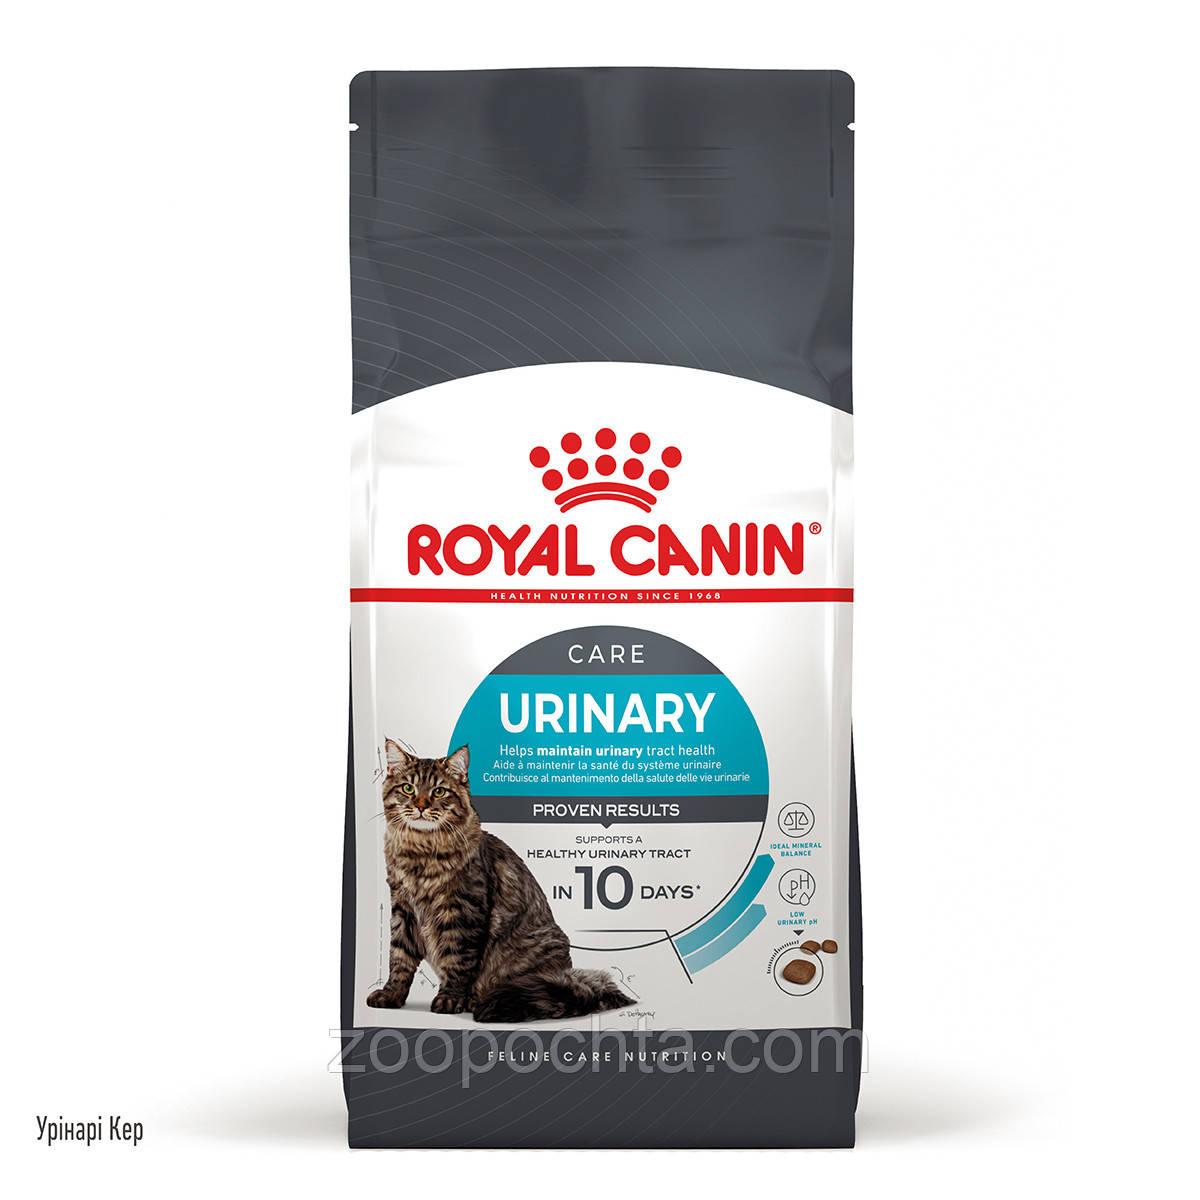 Сухий лікувальний корм Royal Canin Urinary Care для кішок здоров'я сечовивідних шляхів, 2КГ